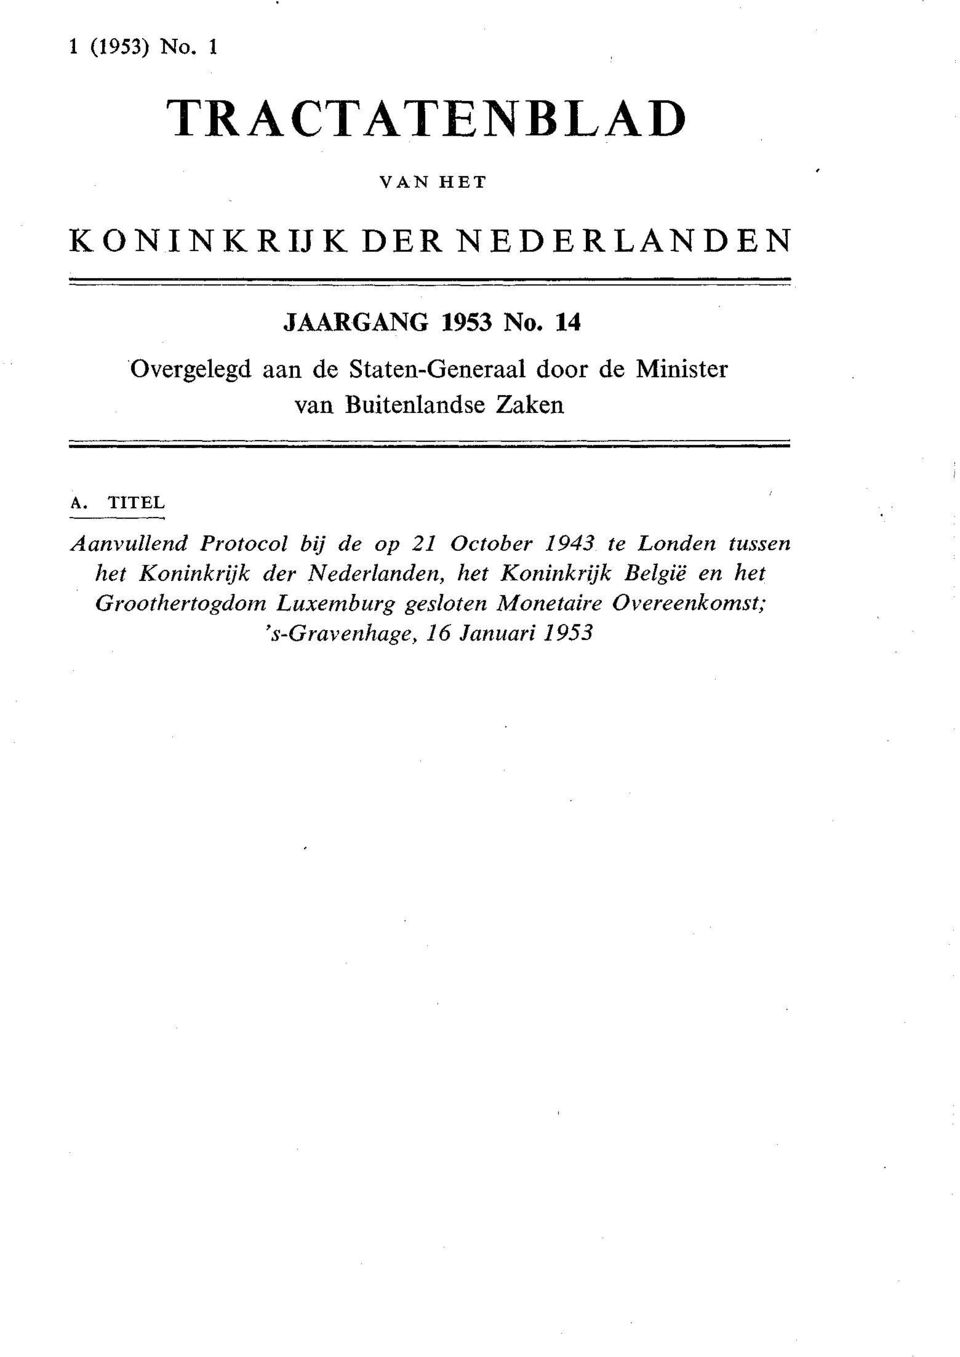 TITEL Aanvullend Protocol bij de op 21 October 1943 te Londen tussen het Koninkrijk der